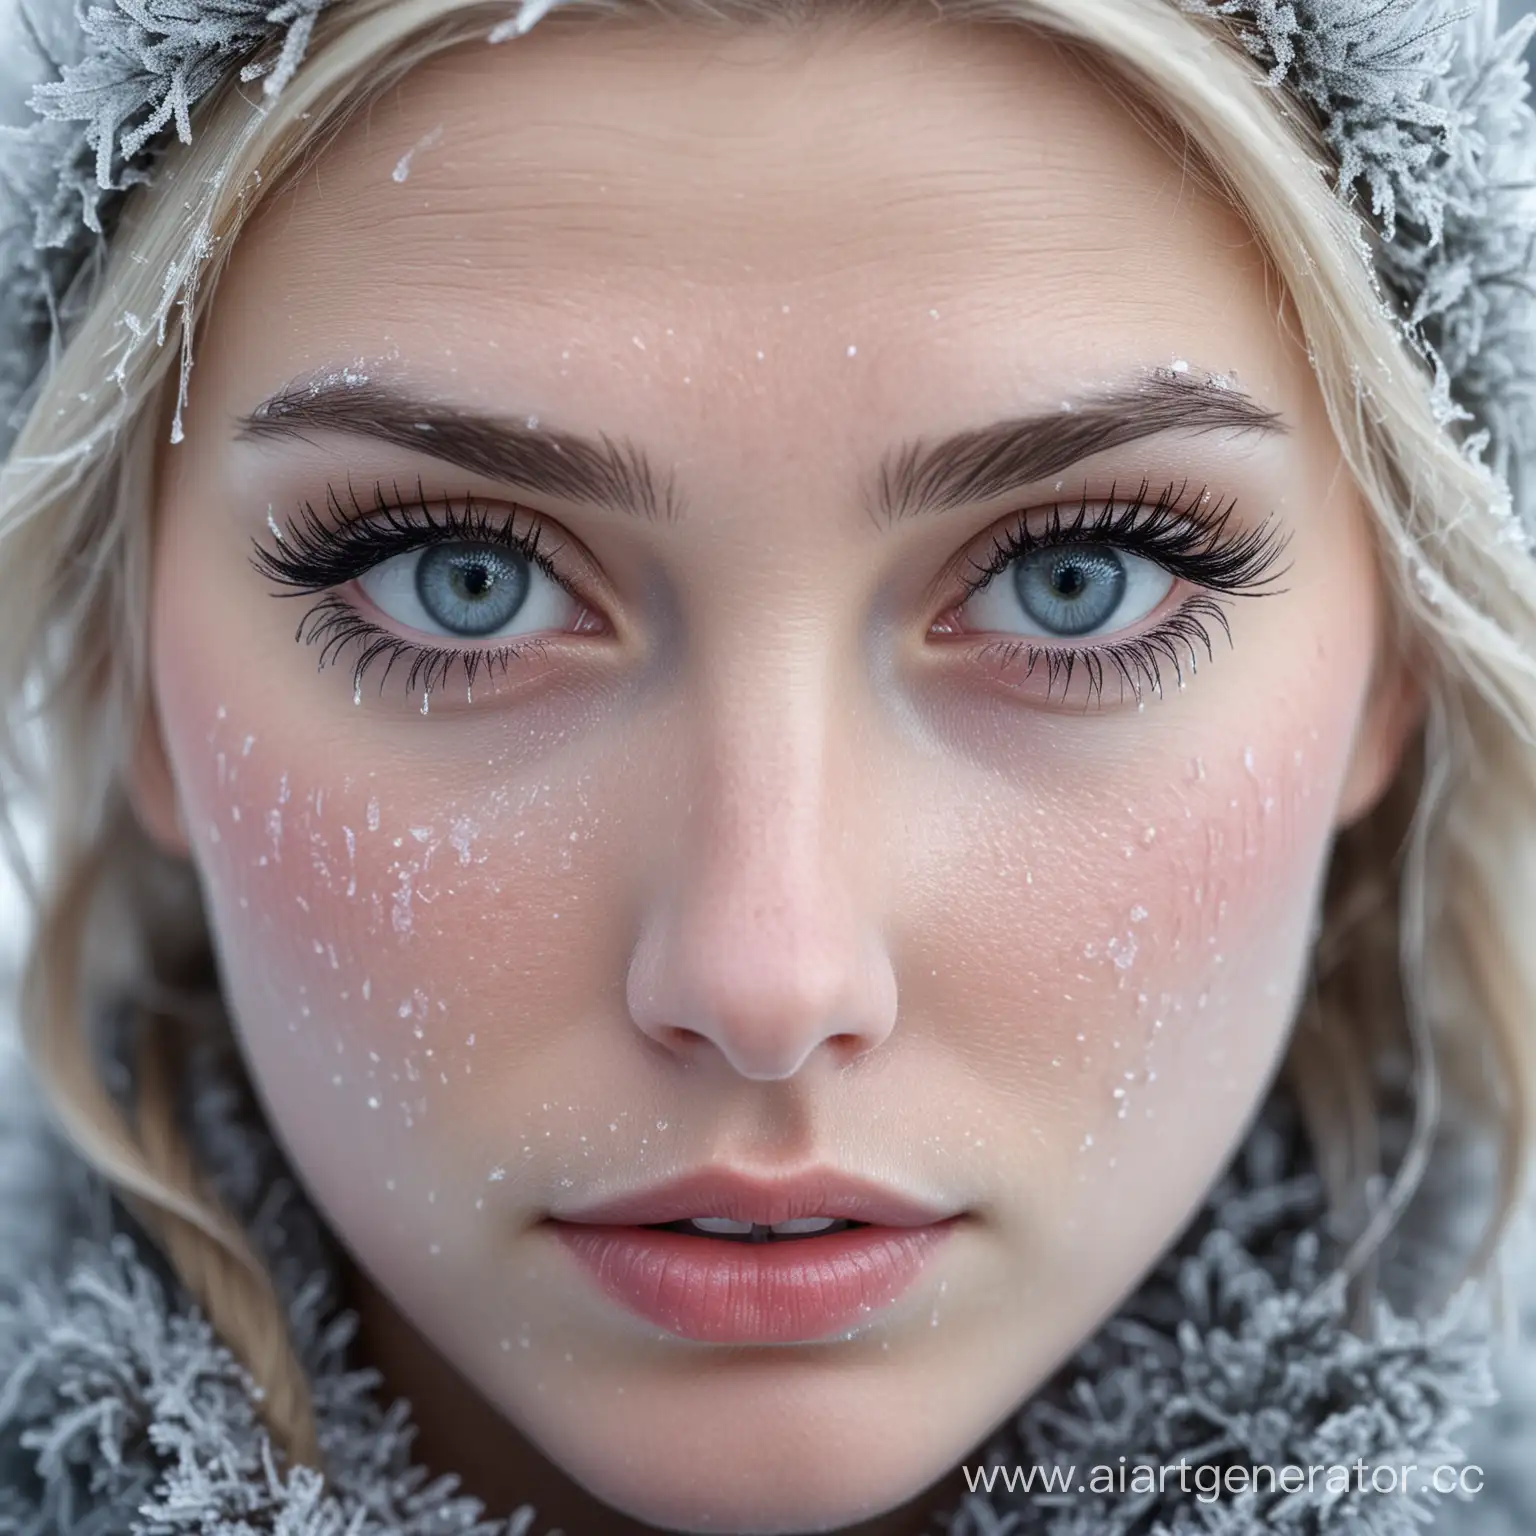 CloseUp-Portrait-of-Female-Eyes-with-FrostCovered-Eyelashes